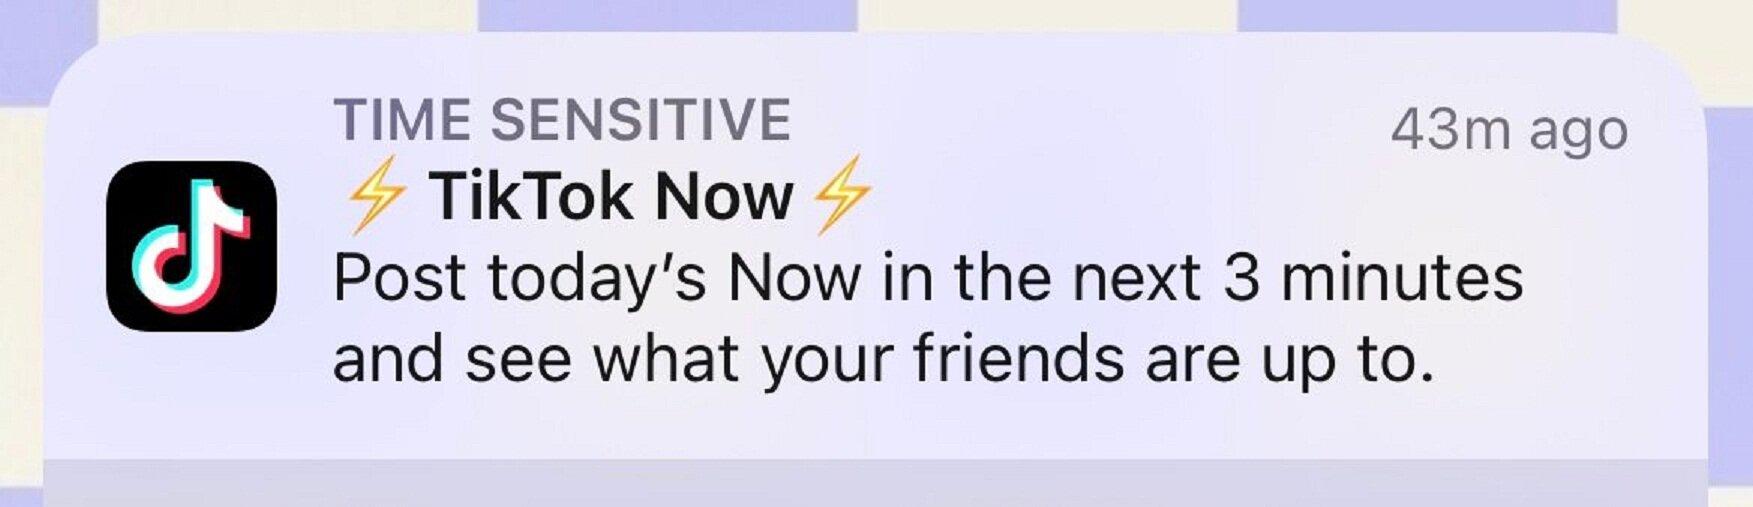 TikTok Now hiện thông báo nhắc bạn đăng nội dung mỗi ngày (Ảnh: Internet)